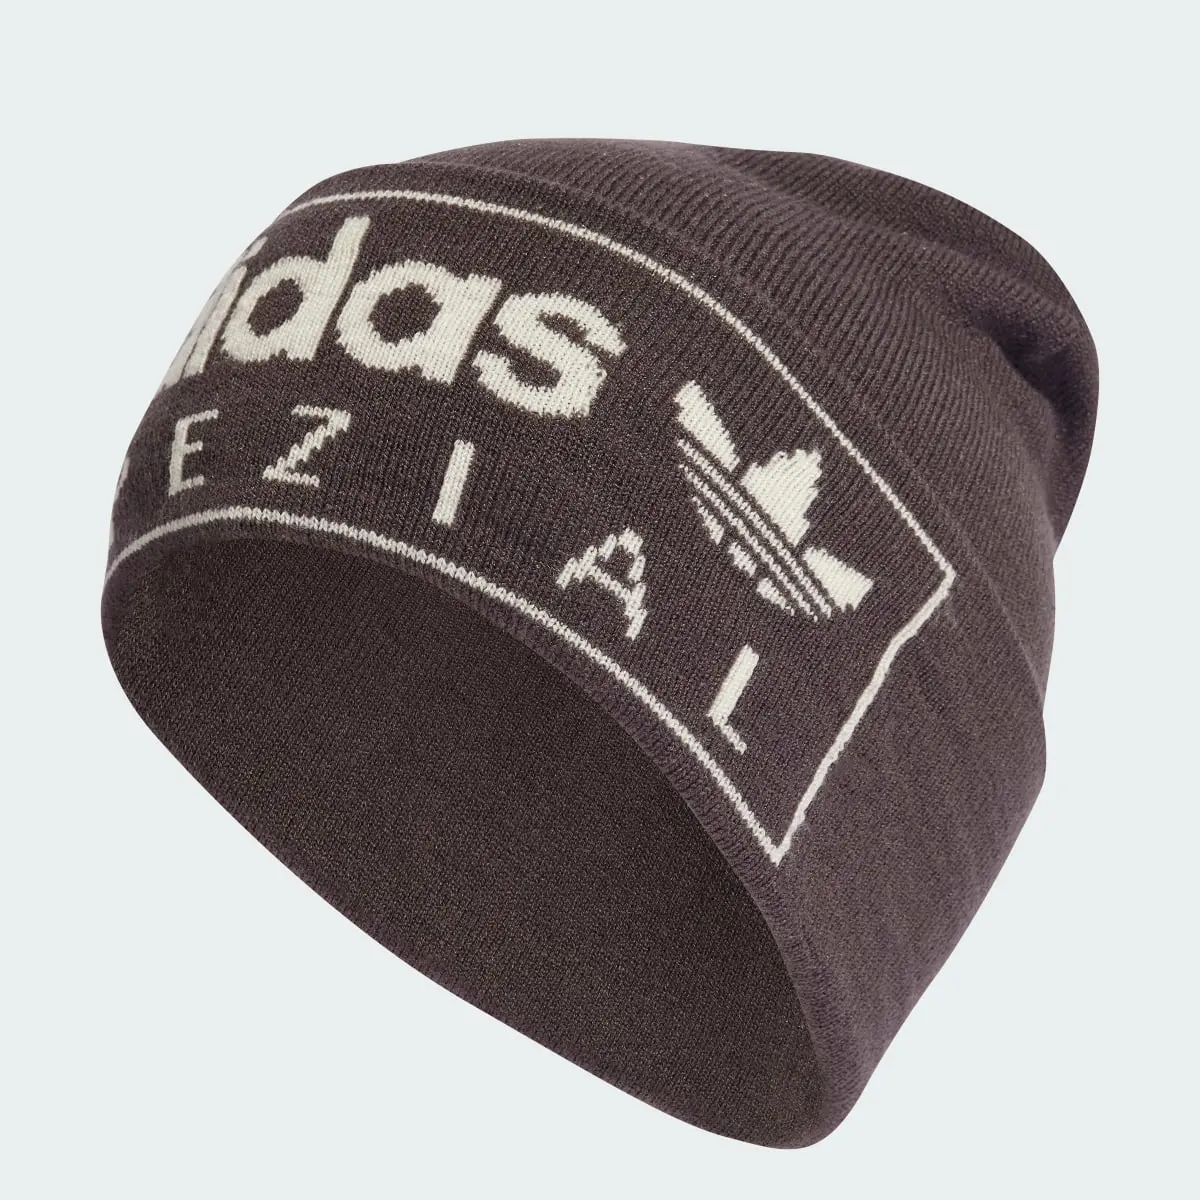 Adidas Cappello Spezial. 1